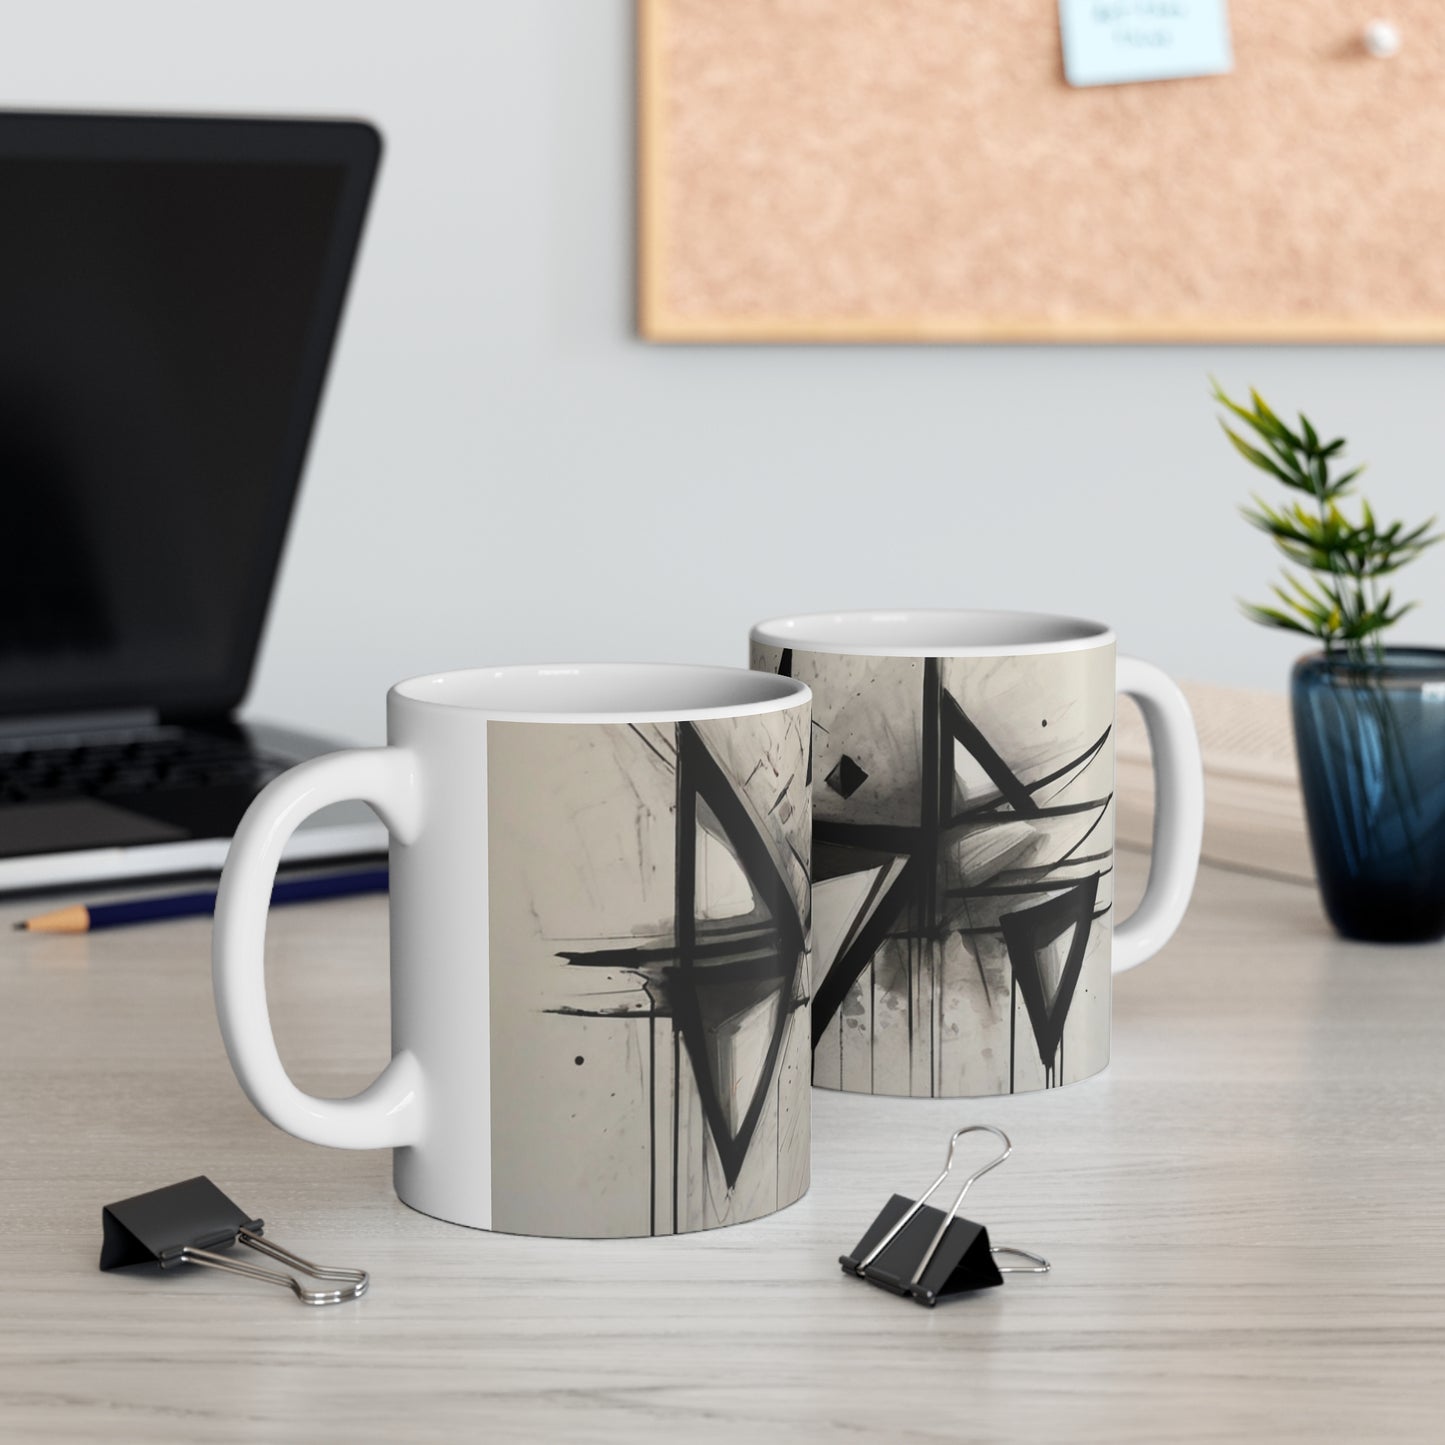 Sketched Triangles Mug - Ceramic Coffee Mug 11oz